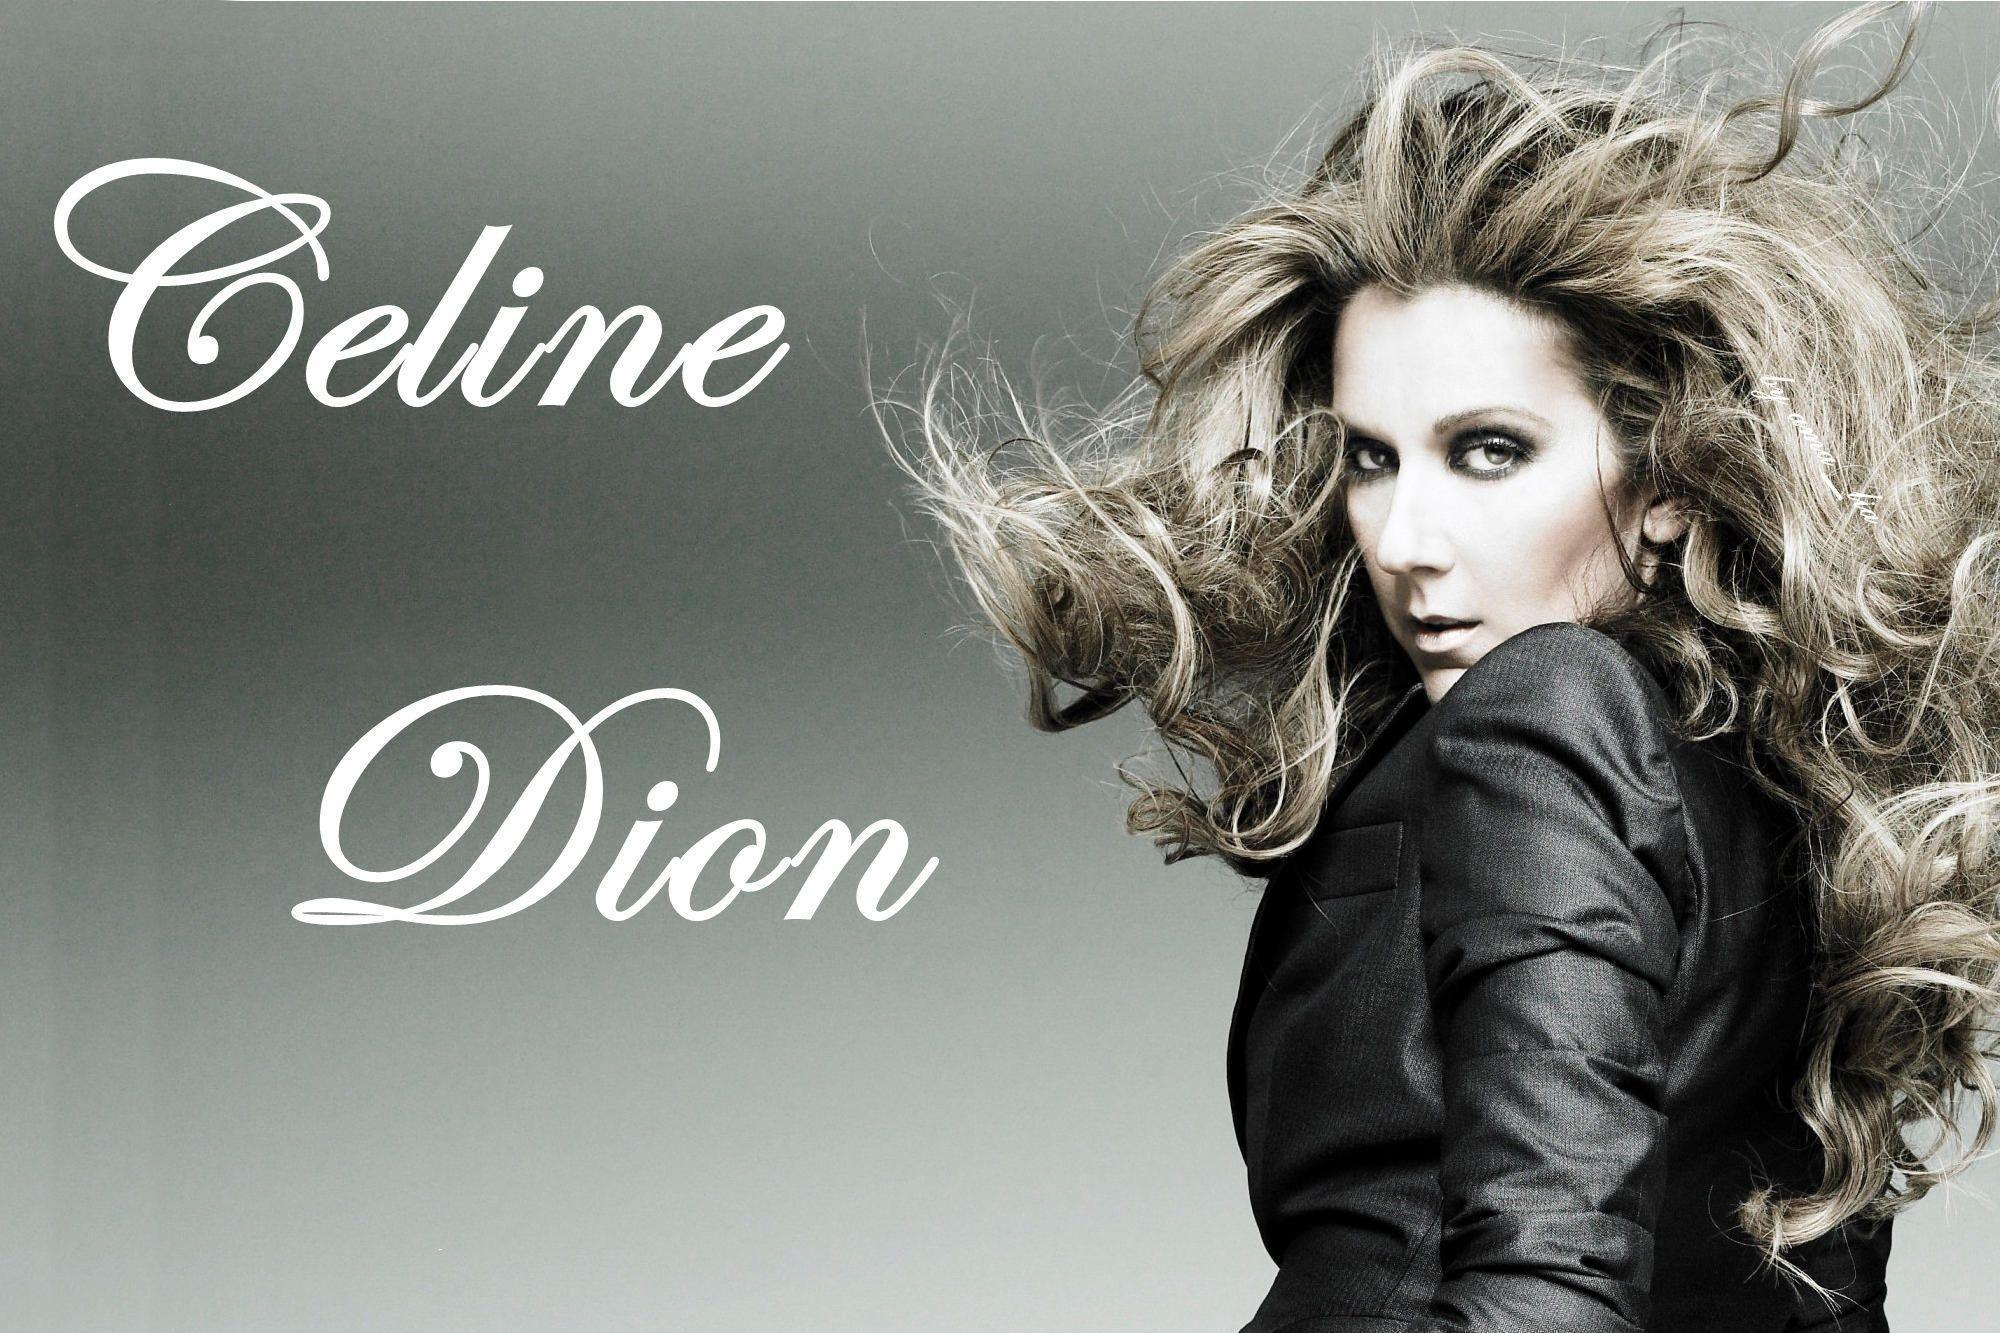 Celine Dion HD Wallpaper